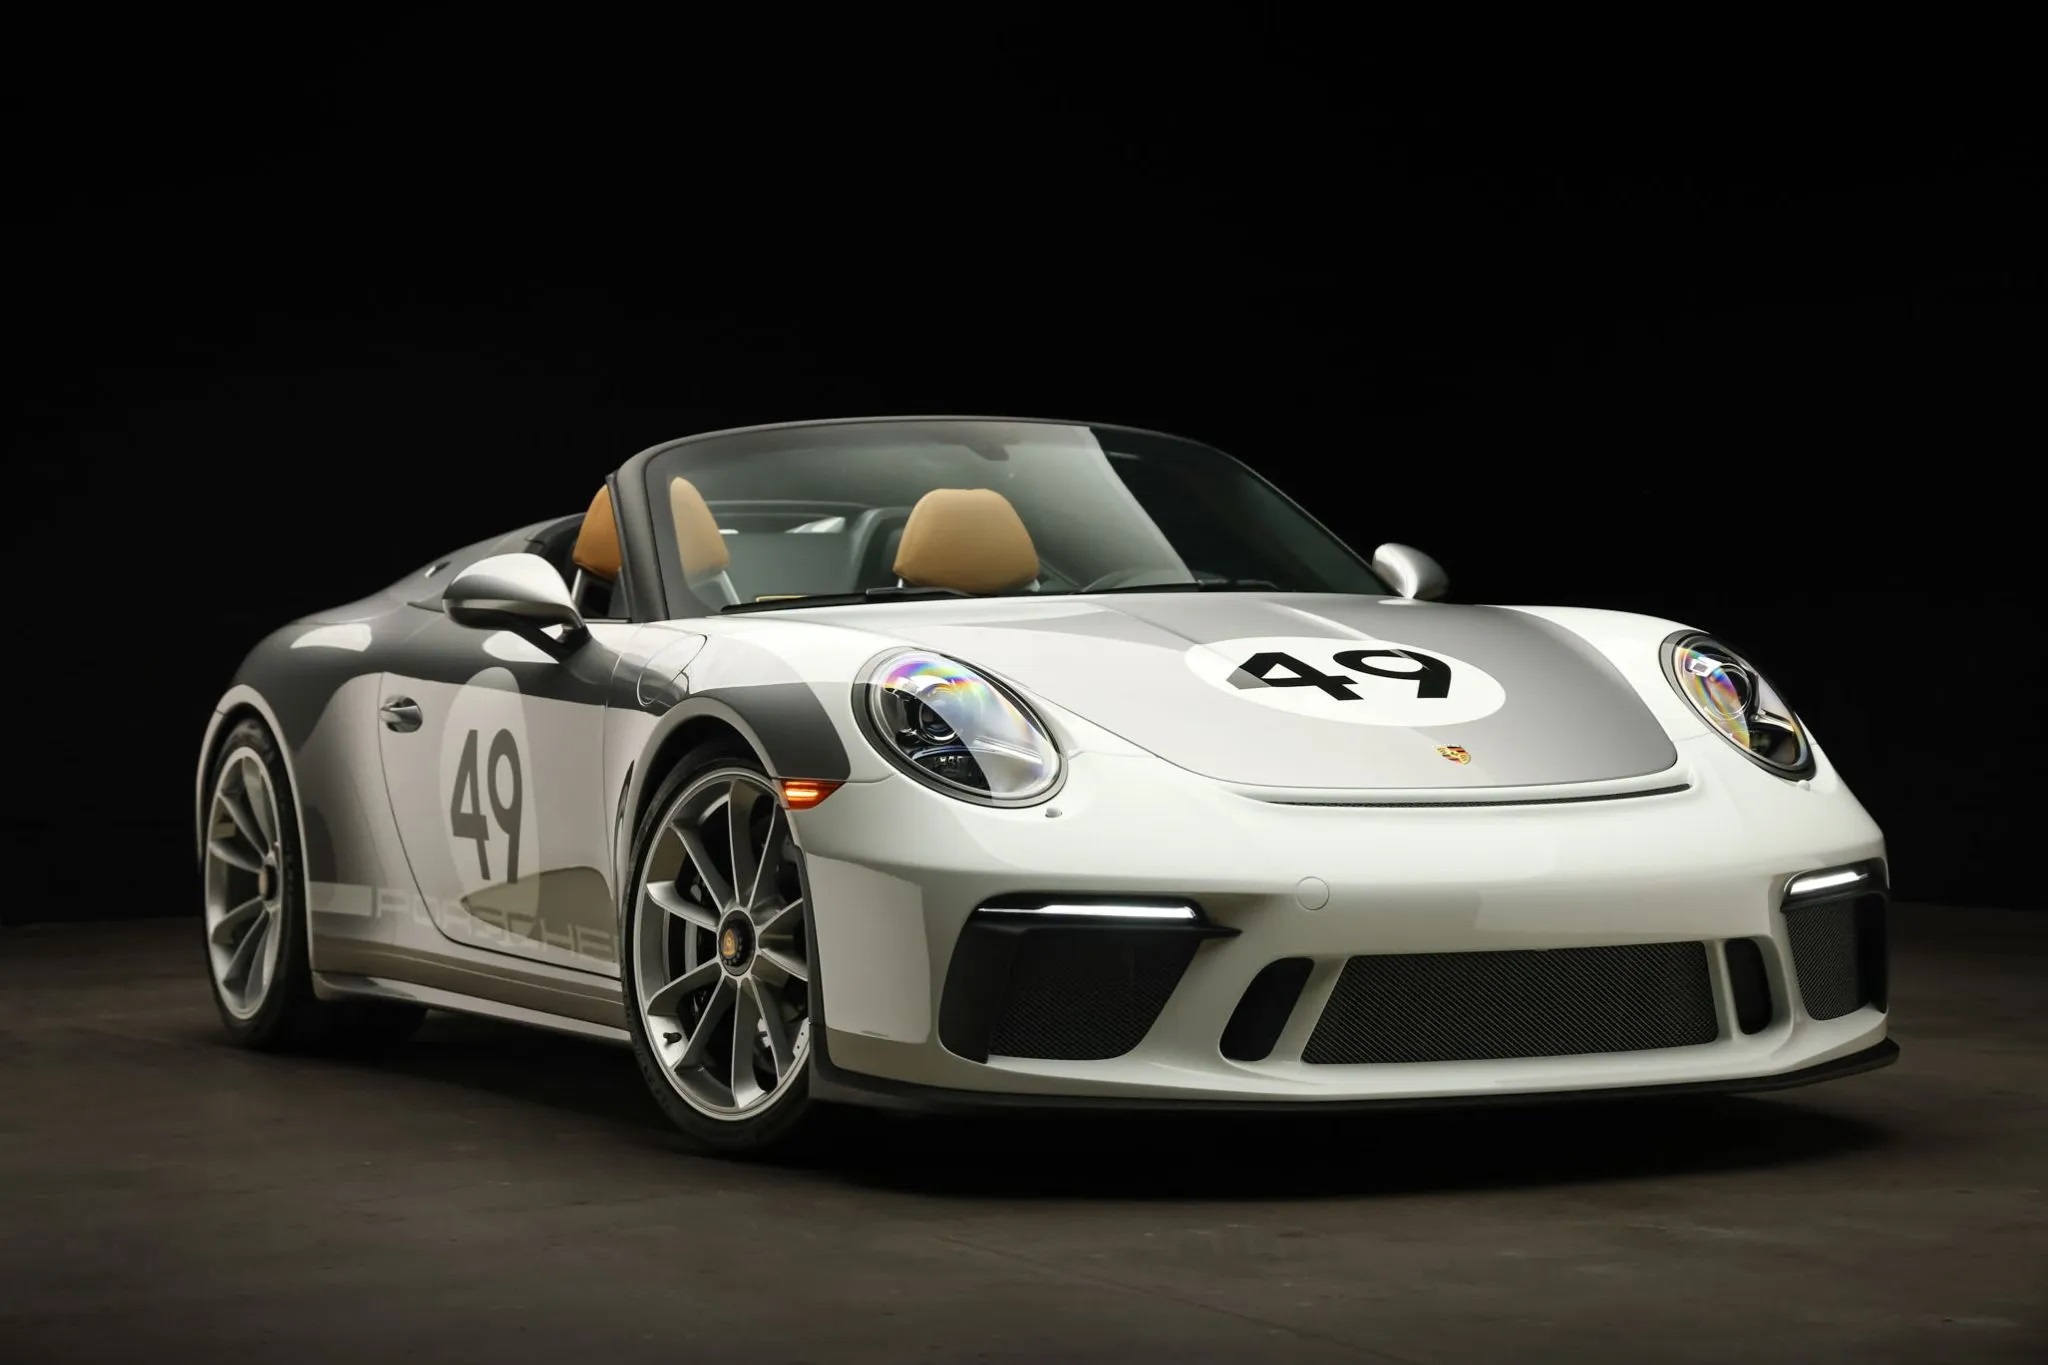 71-Mile 2019 Porsche 911 Speedster